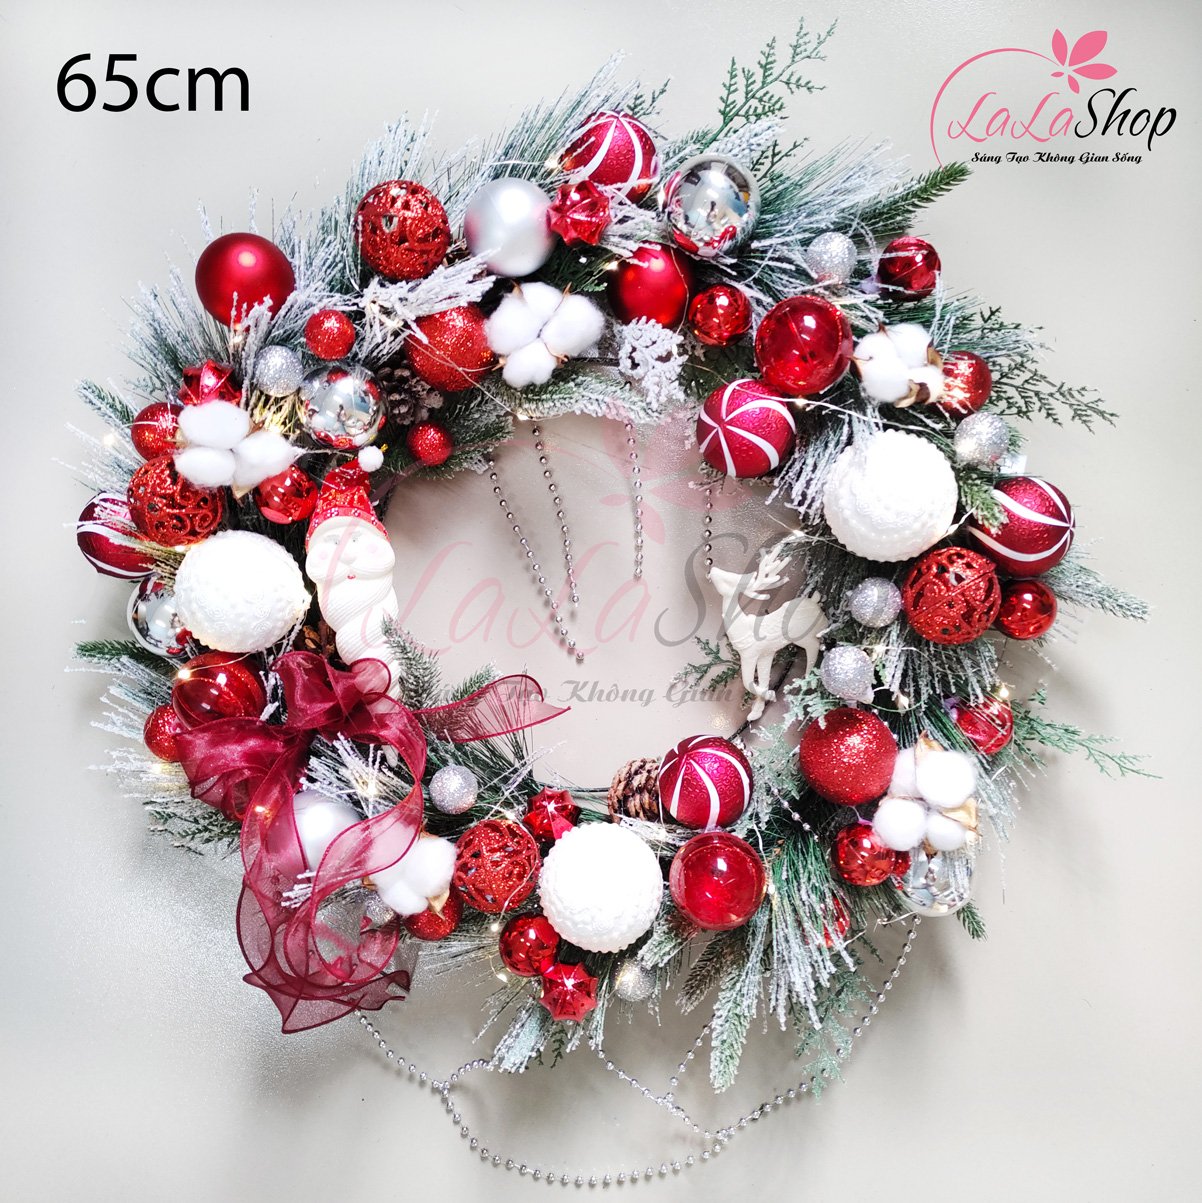 Vòng nguyệt quế 60cm trang trí noel merry Christmas quả châu hoa trạng nguyên sắc màu kèm đèn led